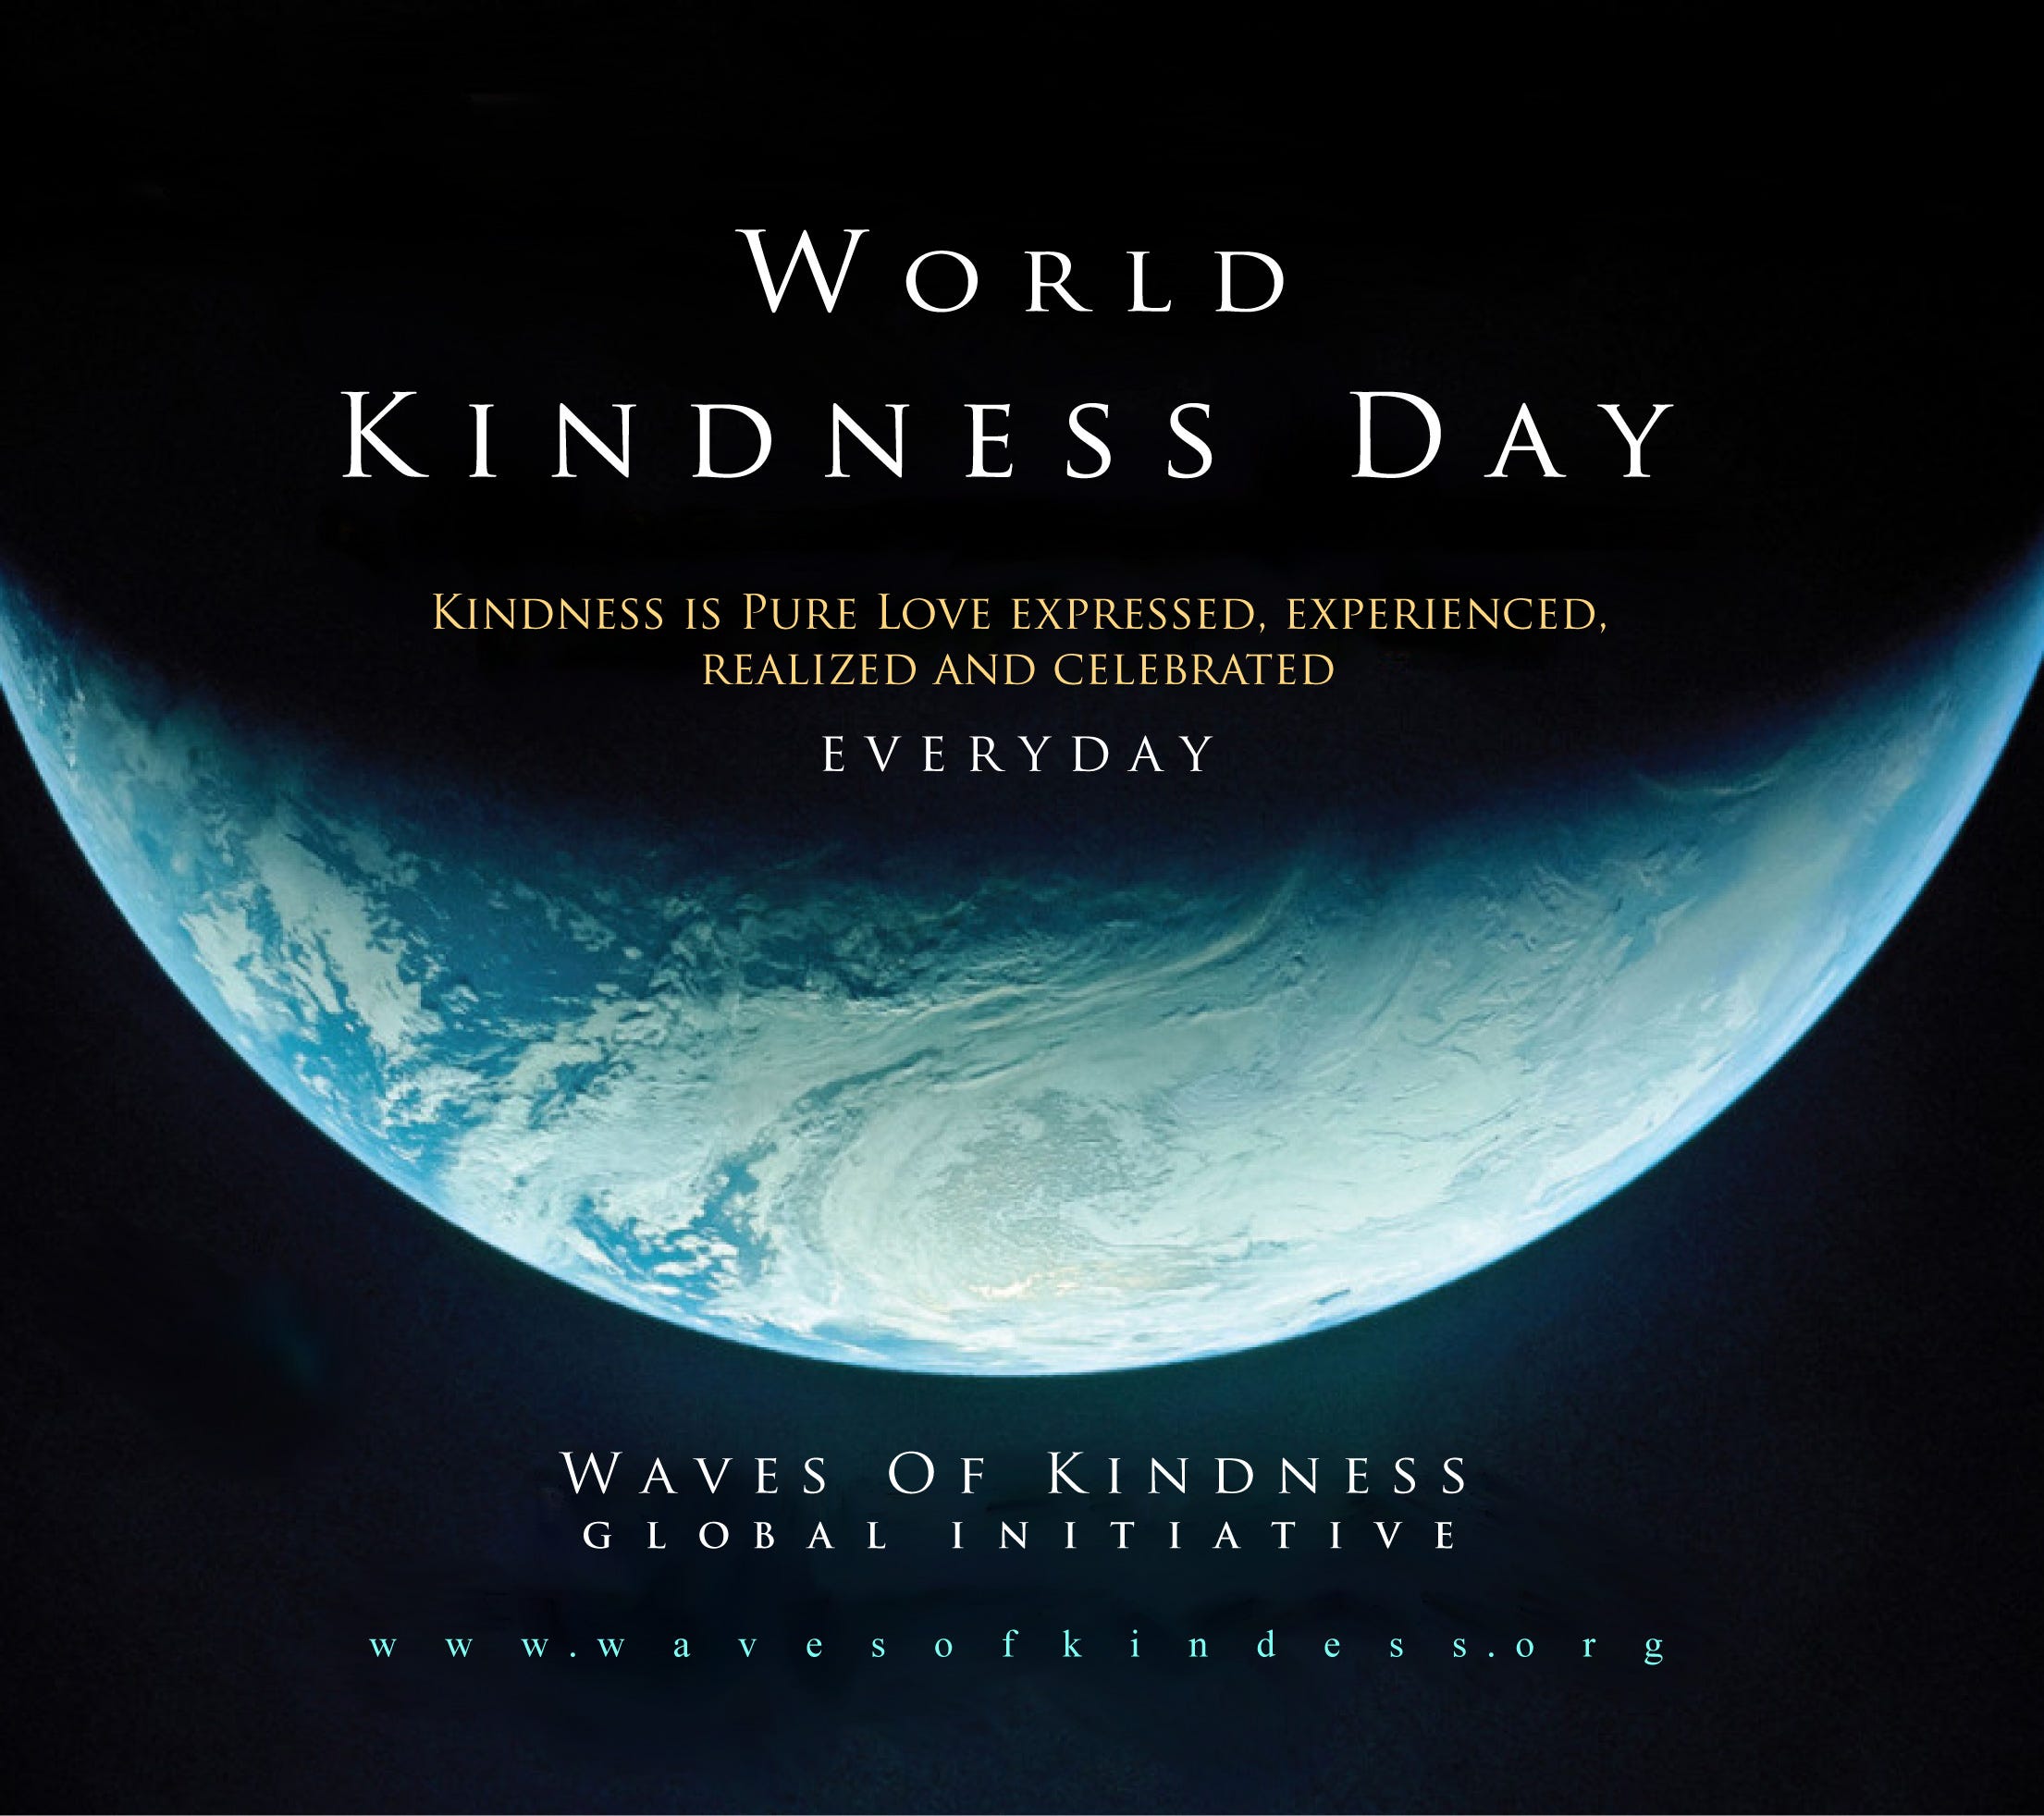 November 13 World Kindness Day Kindness Day Isn T Just About Adopting By Antonio Gallo La Vita E Tutta Un Blog Unideadivita Medium